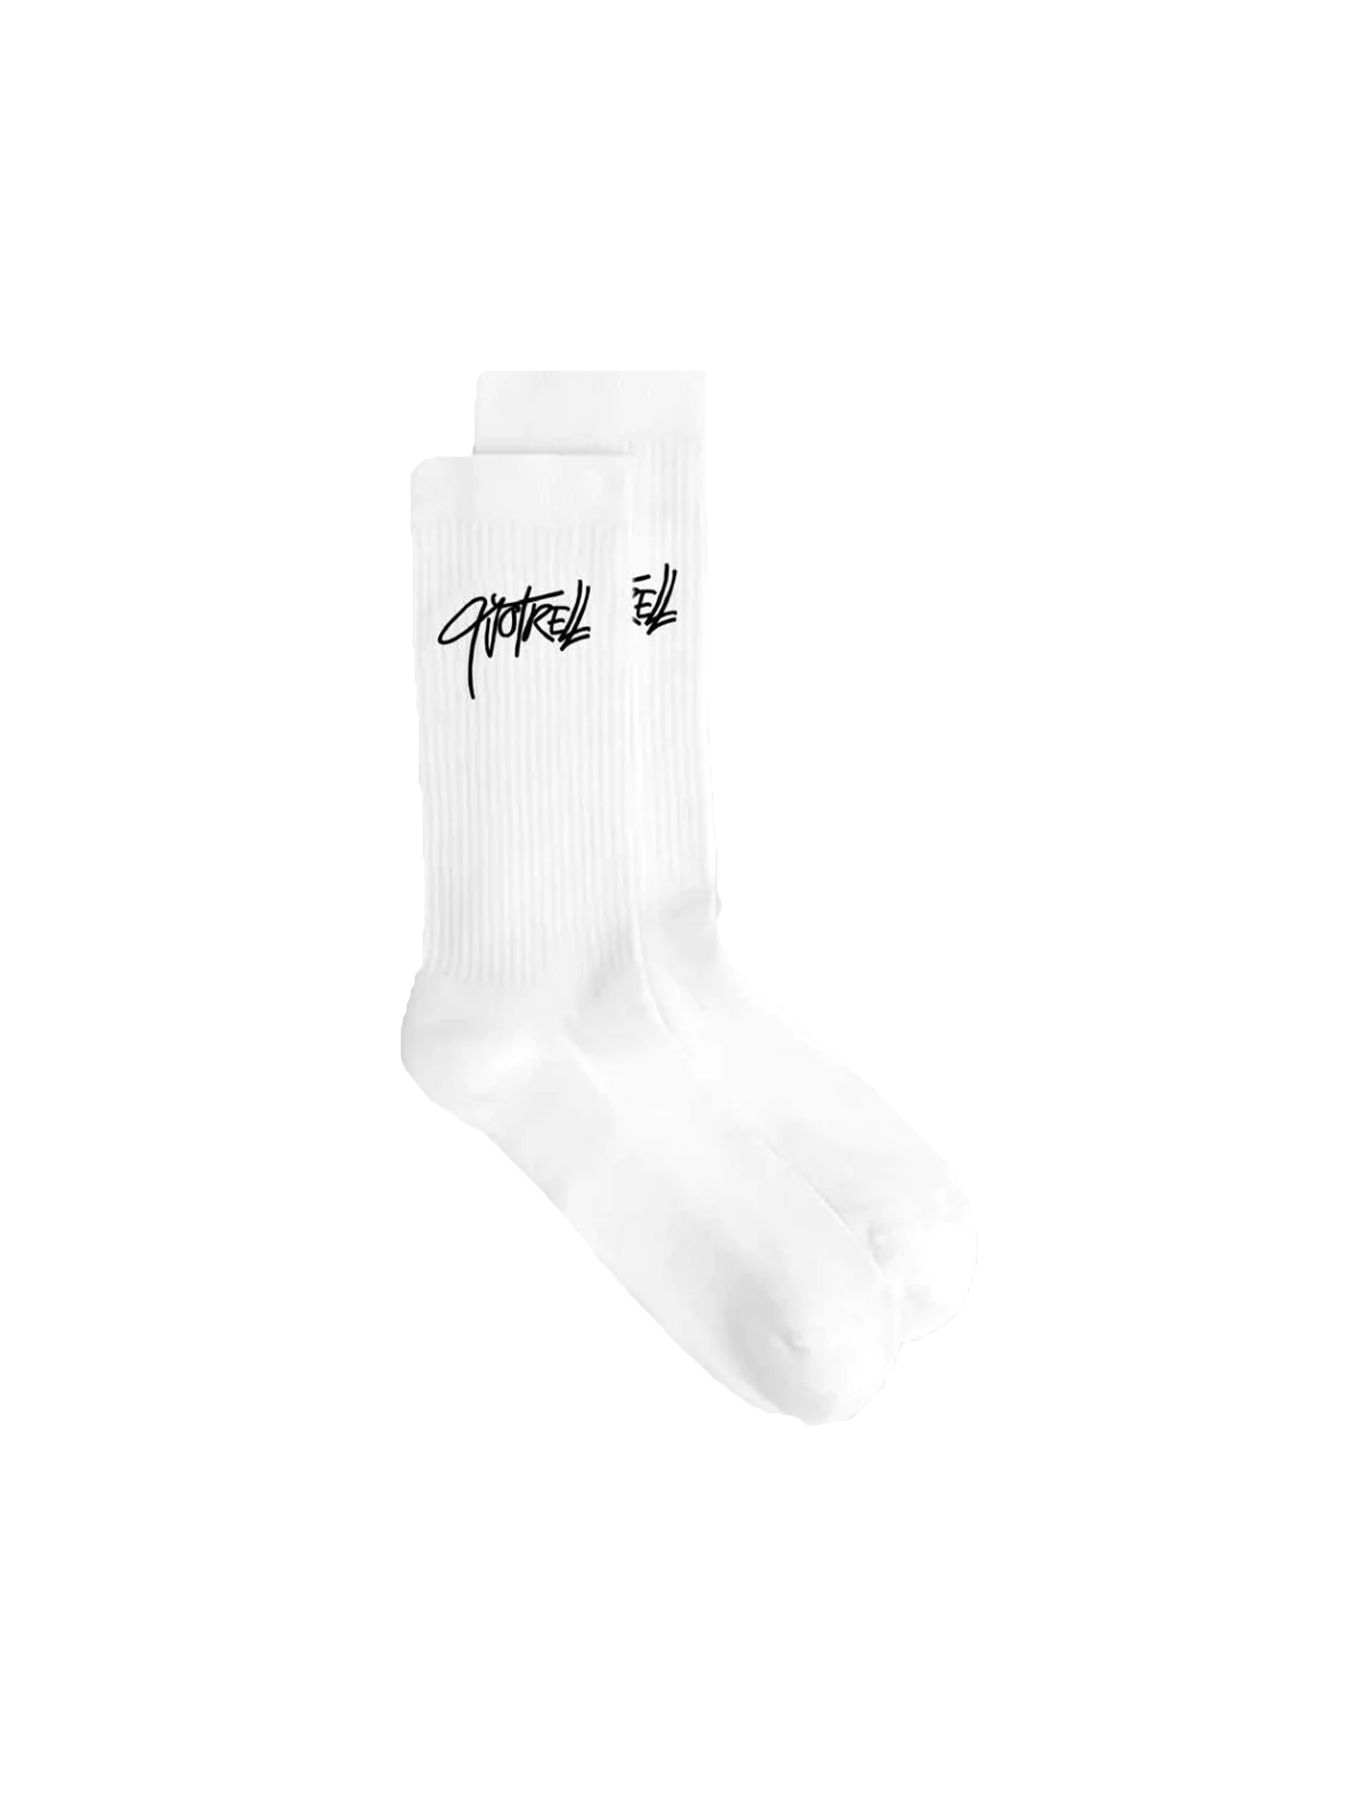 Quotrell Monterey socks 2 pack White/black 00104007-102